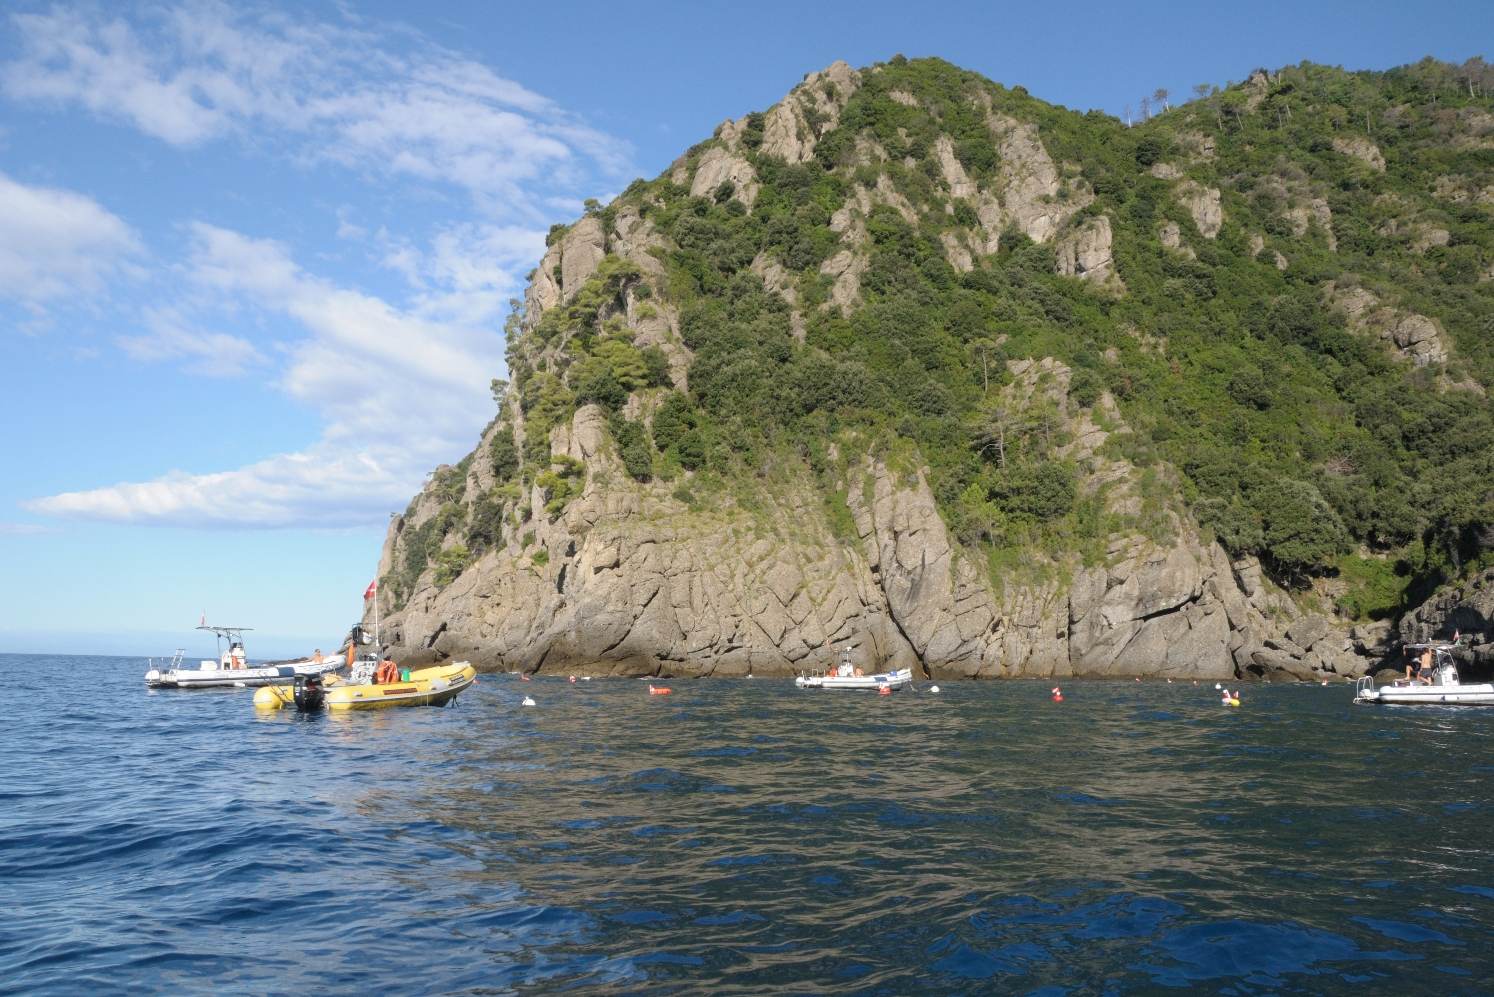 Pesca nell’area marina di Portofino: nessuna riduzione o divieto in vista